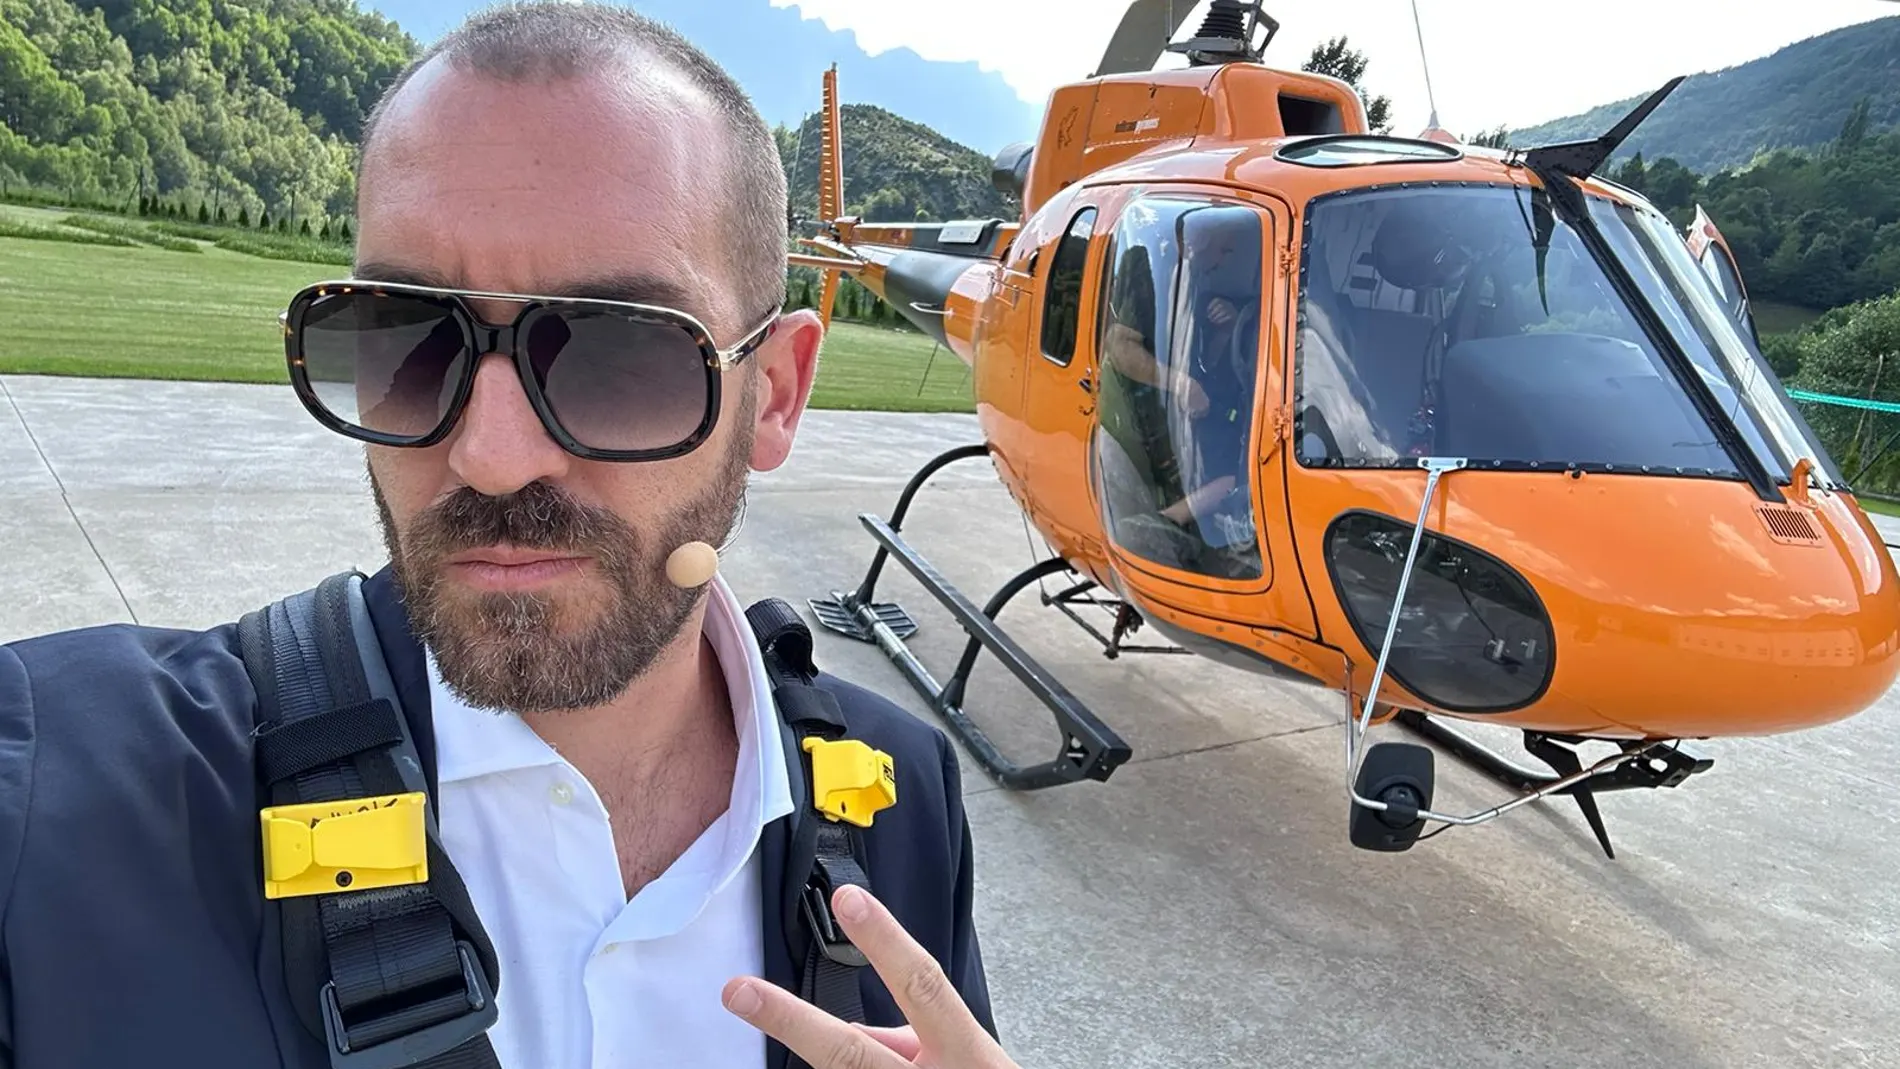 Selfie de Jorge Ponce, a lo Carlos Herrera, ante el helicóptero de C's del que acaba de apearse